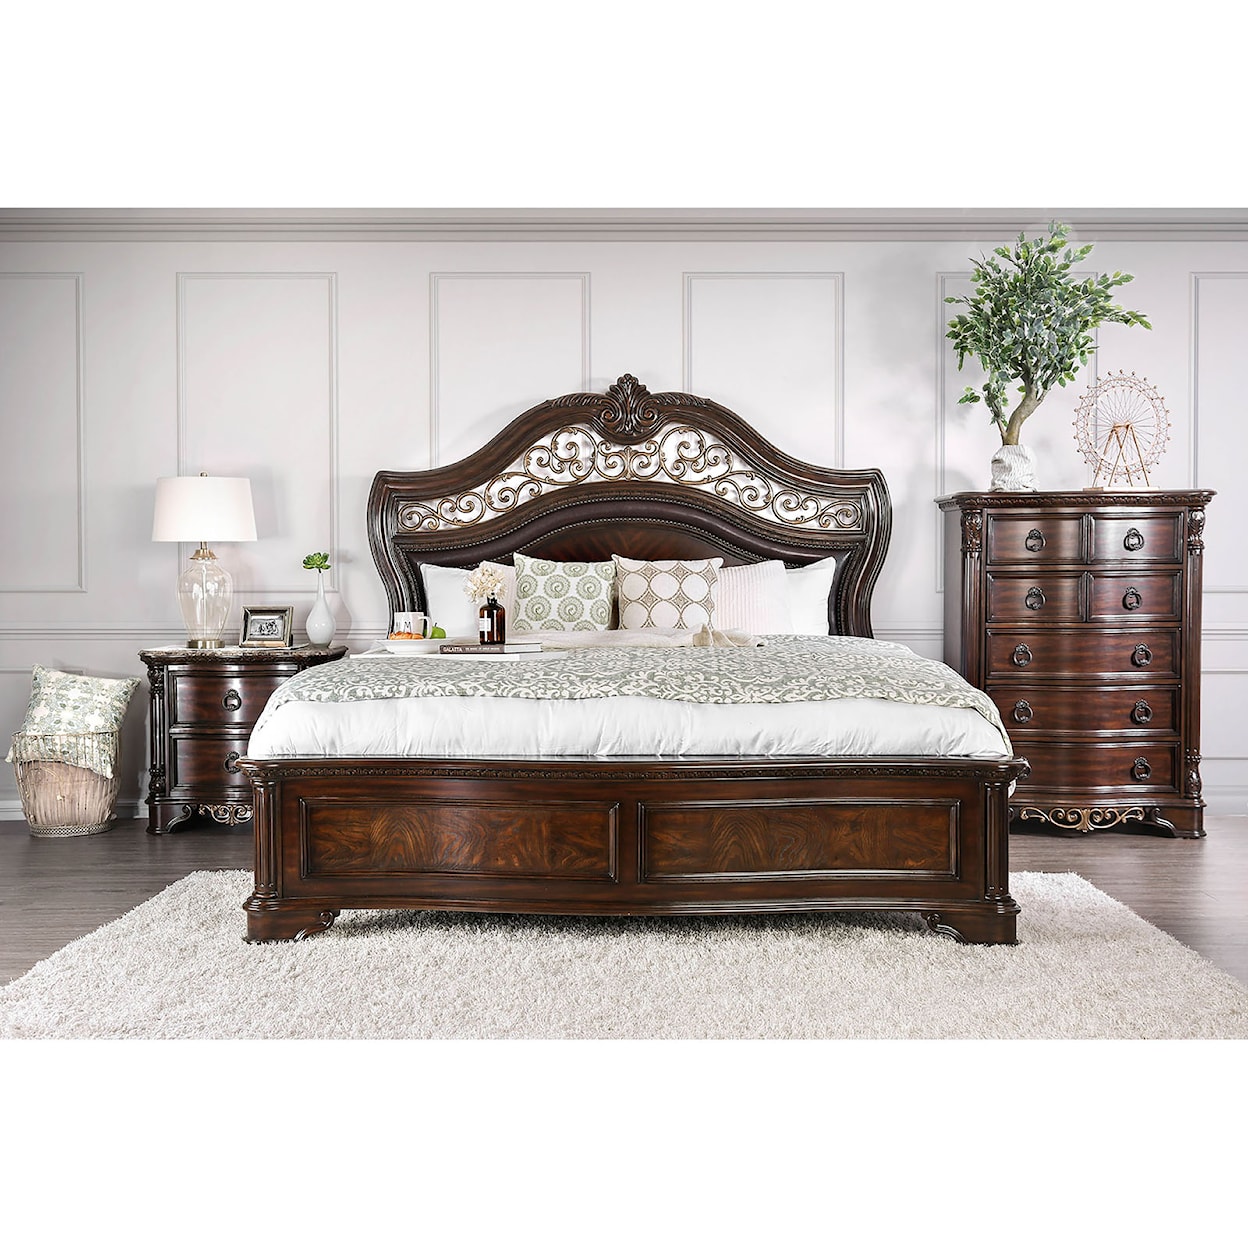 Furniture of America Menodora 4-Piece Queen Bedroom Set